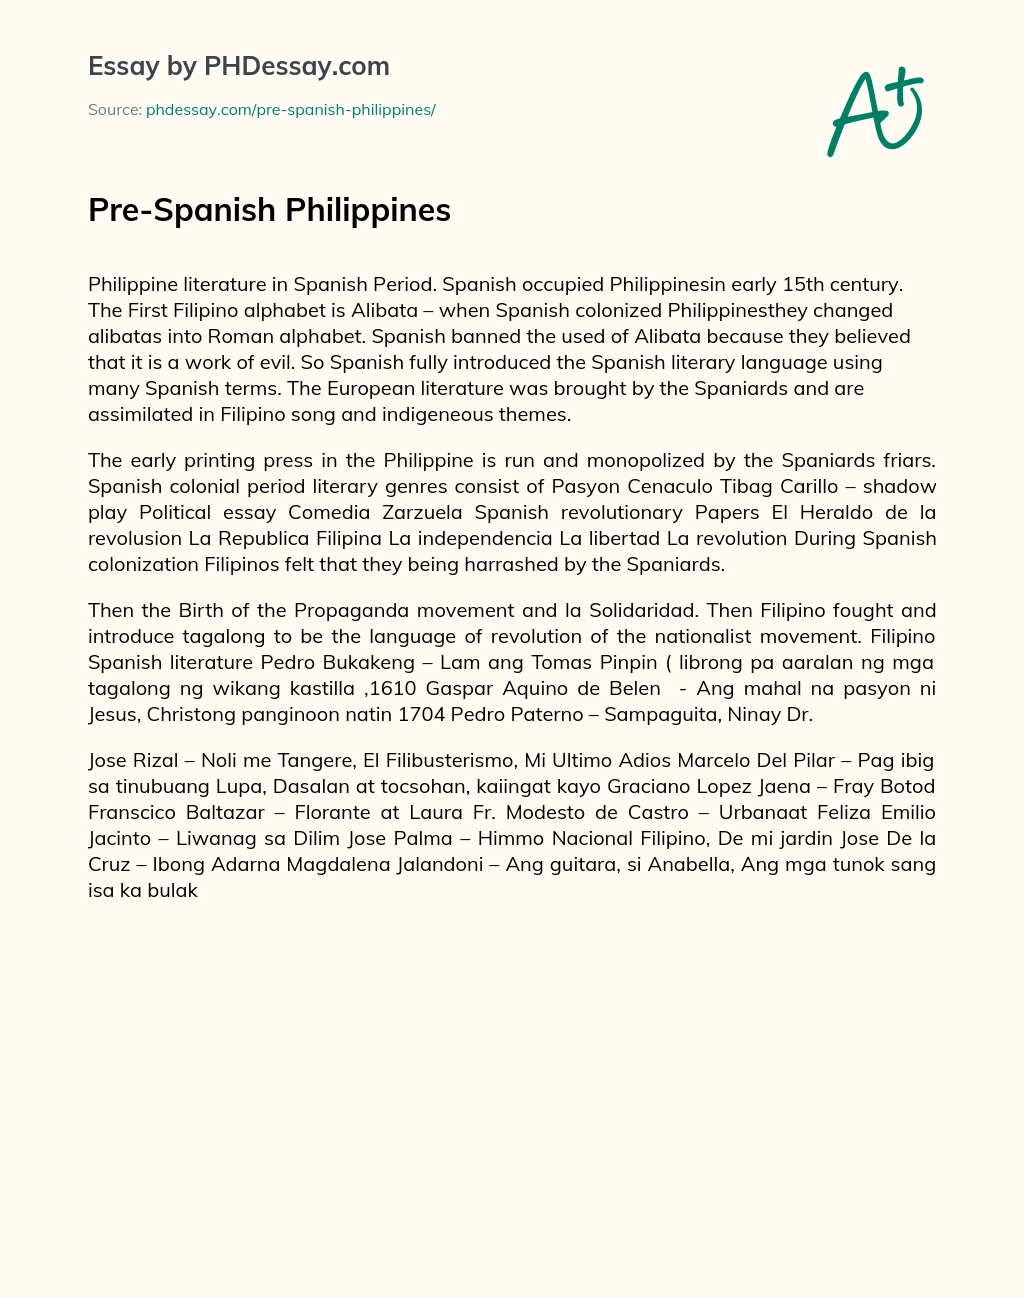 Pre-Spanish Philippines essay